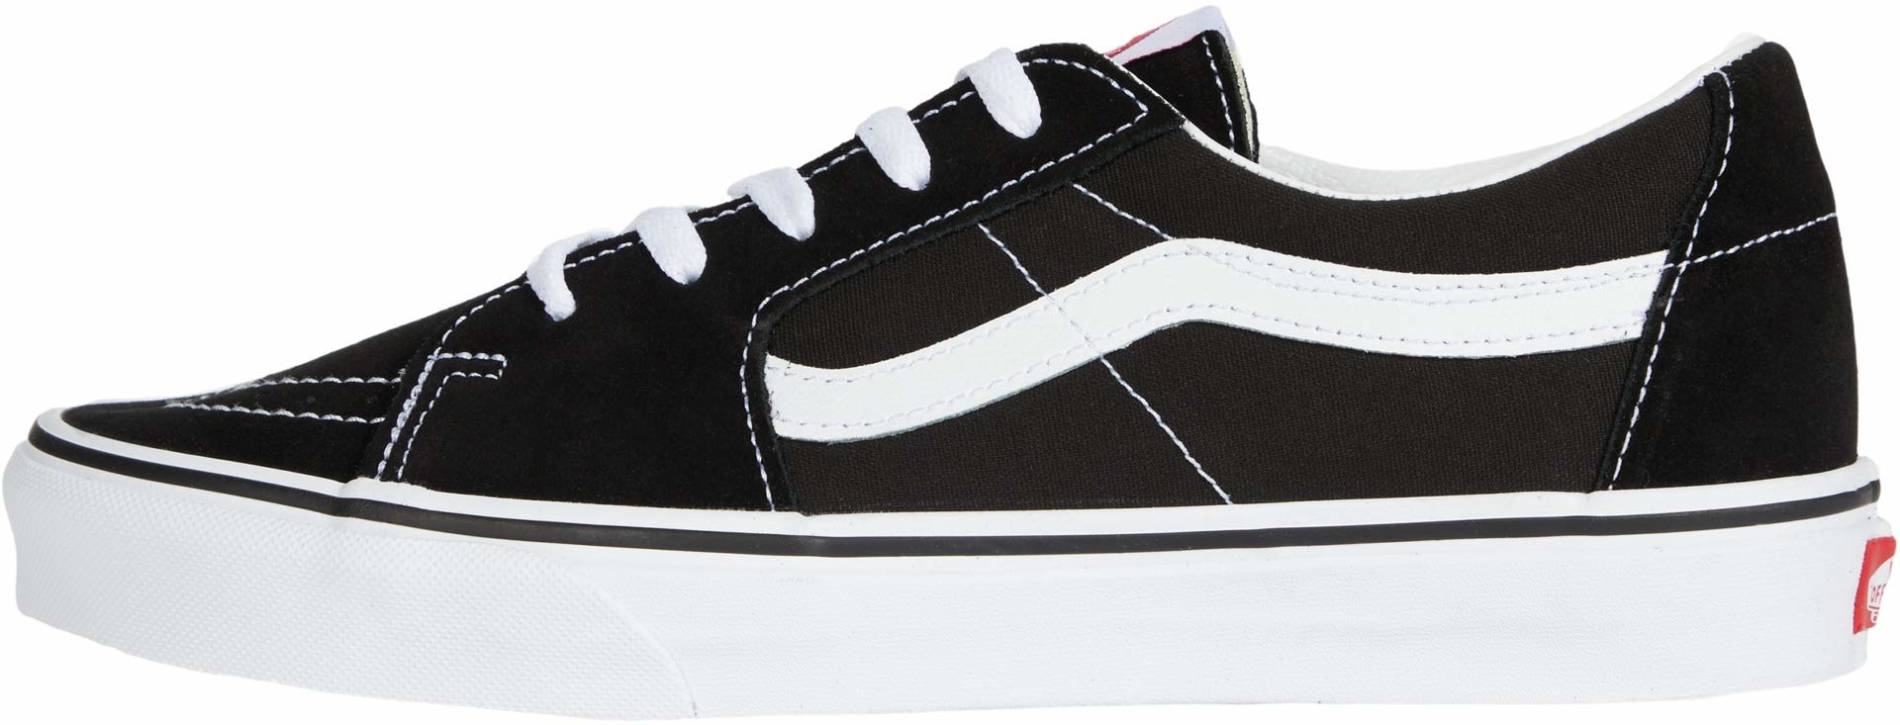 Vans SK8-Low sneakers in black + white 